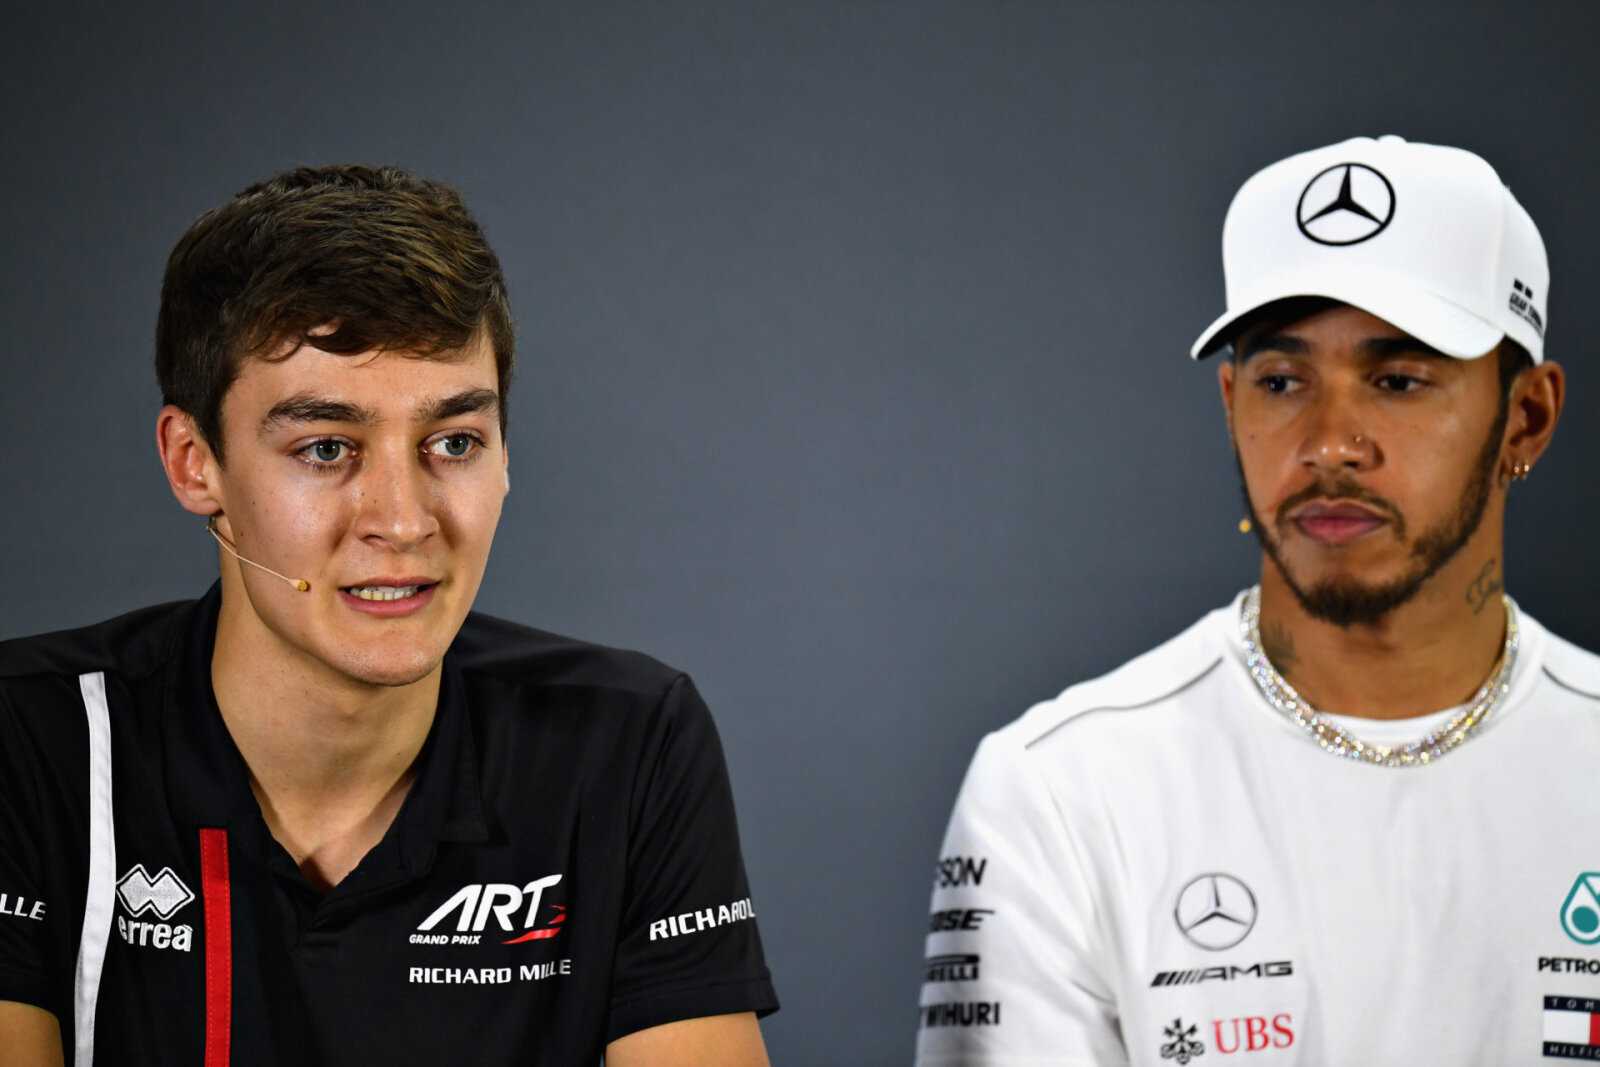 Les ingénieurs Mercedes pensent que Lewis Hamilton aurait surclassé George Russell au GP de Sakhir 2020